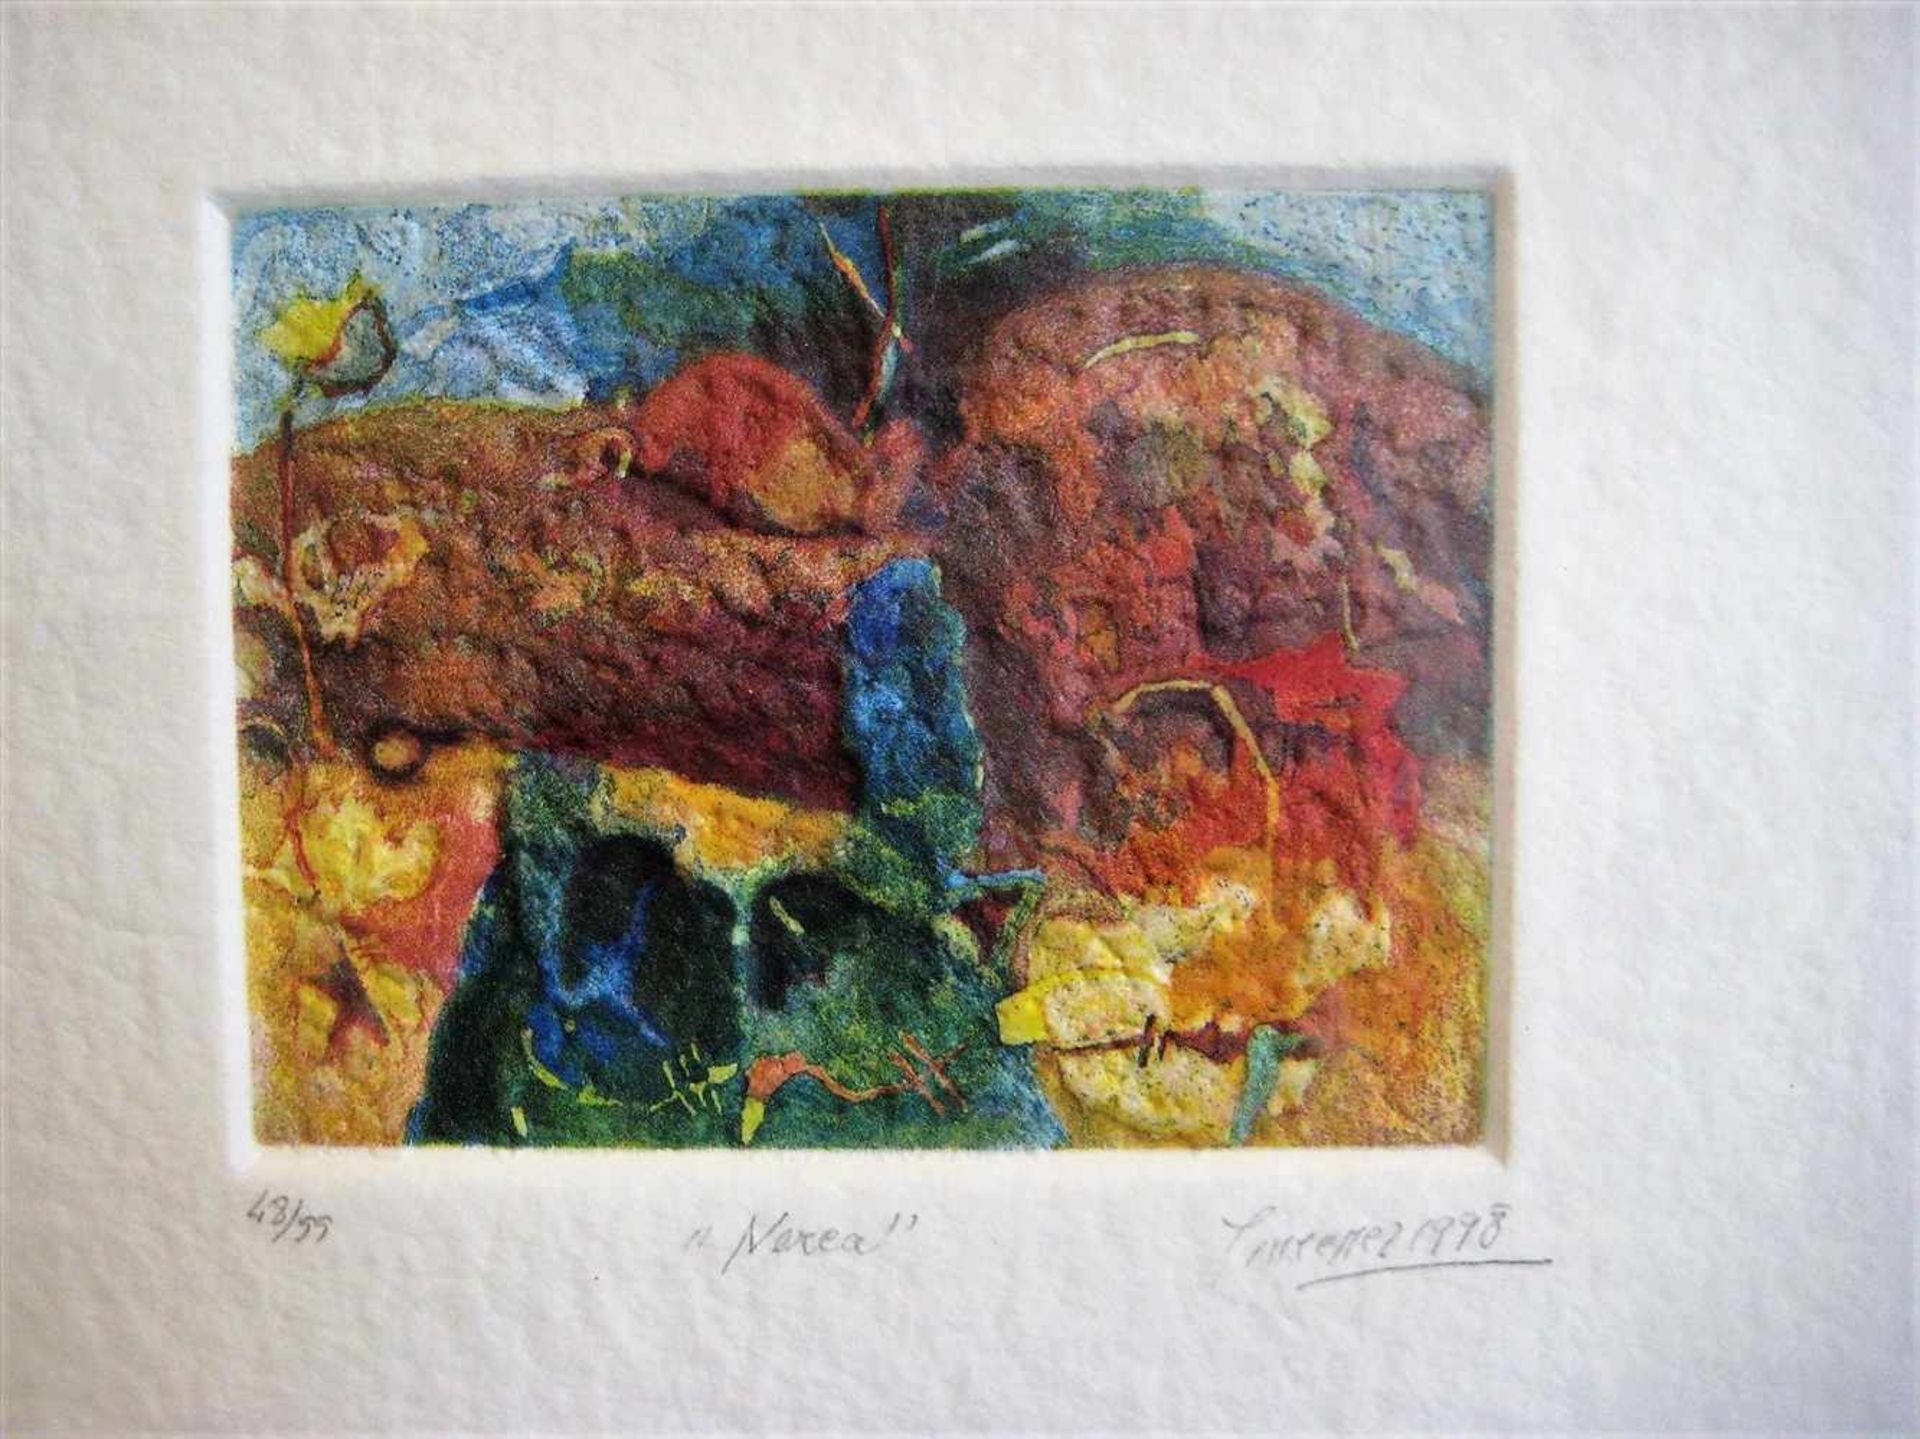 Jiménez, Antonio, 1945, Malaga, Spanischer Maler und Grafiker, "Nerea", Farblithografie, - Bild 2 aus 2